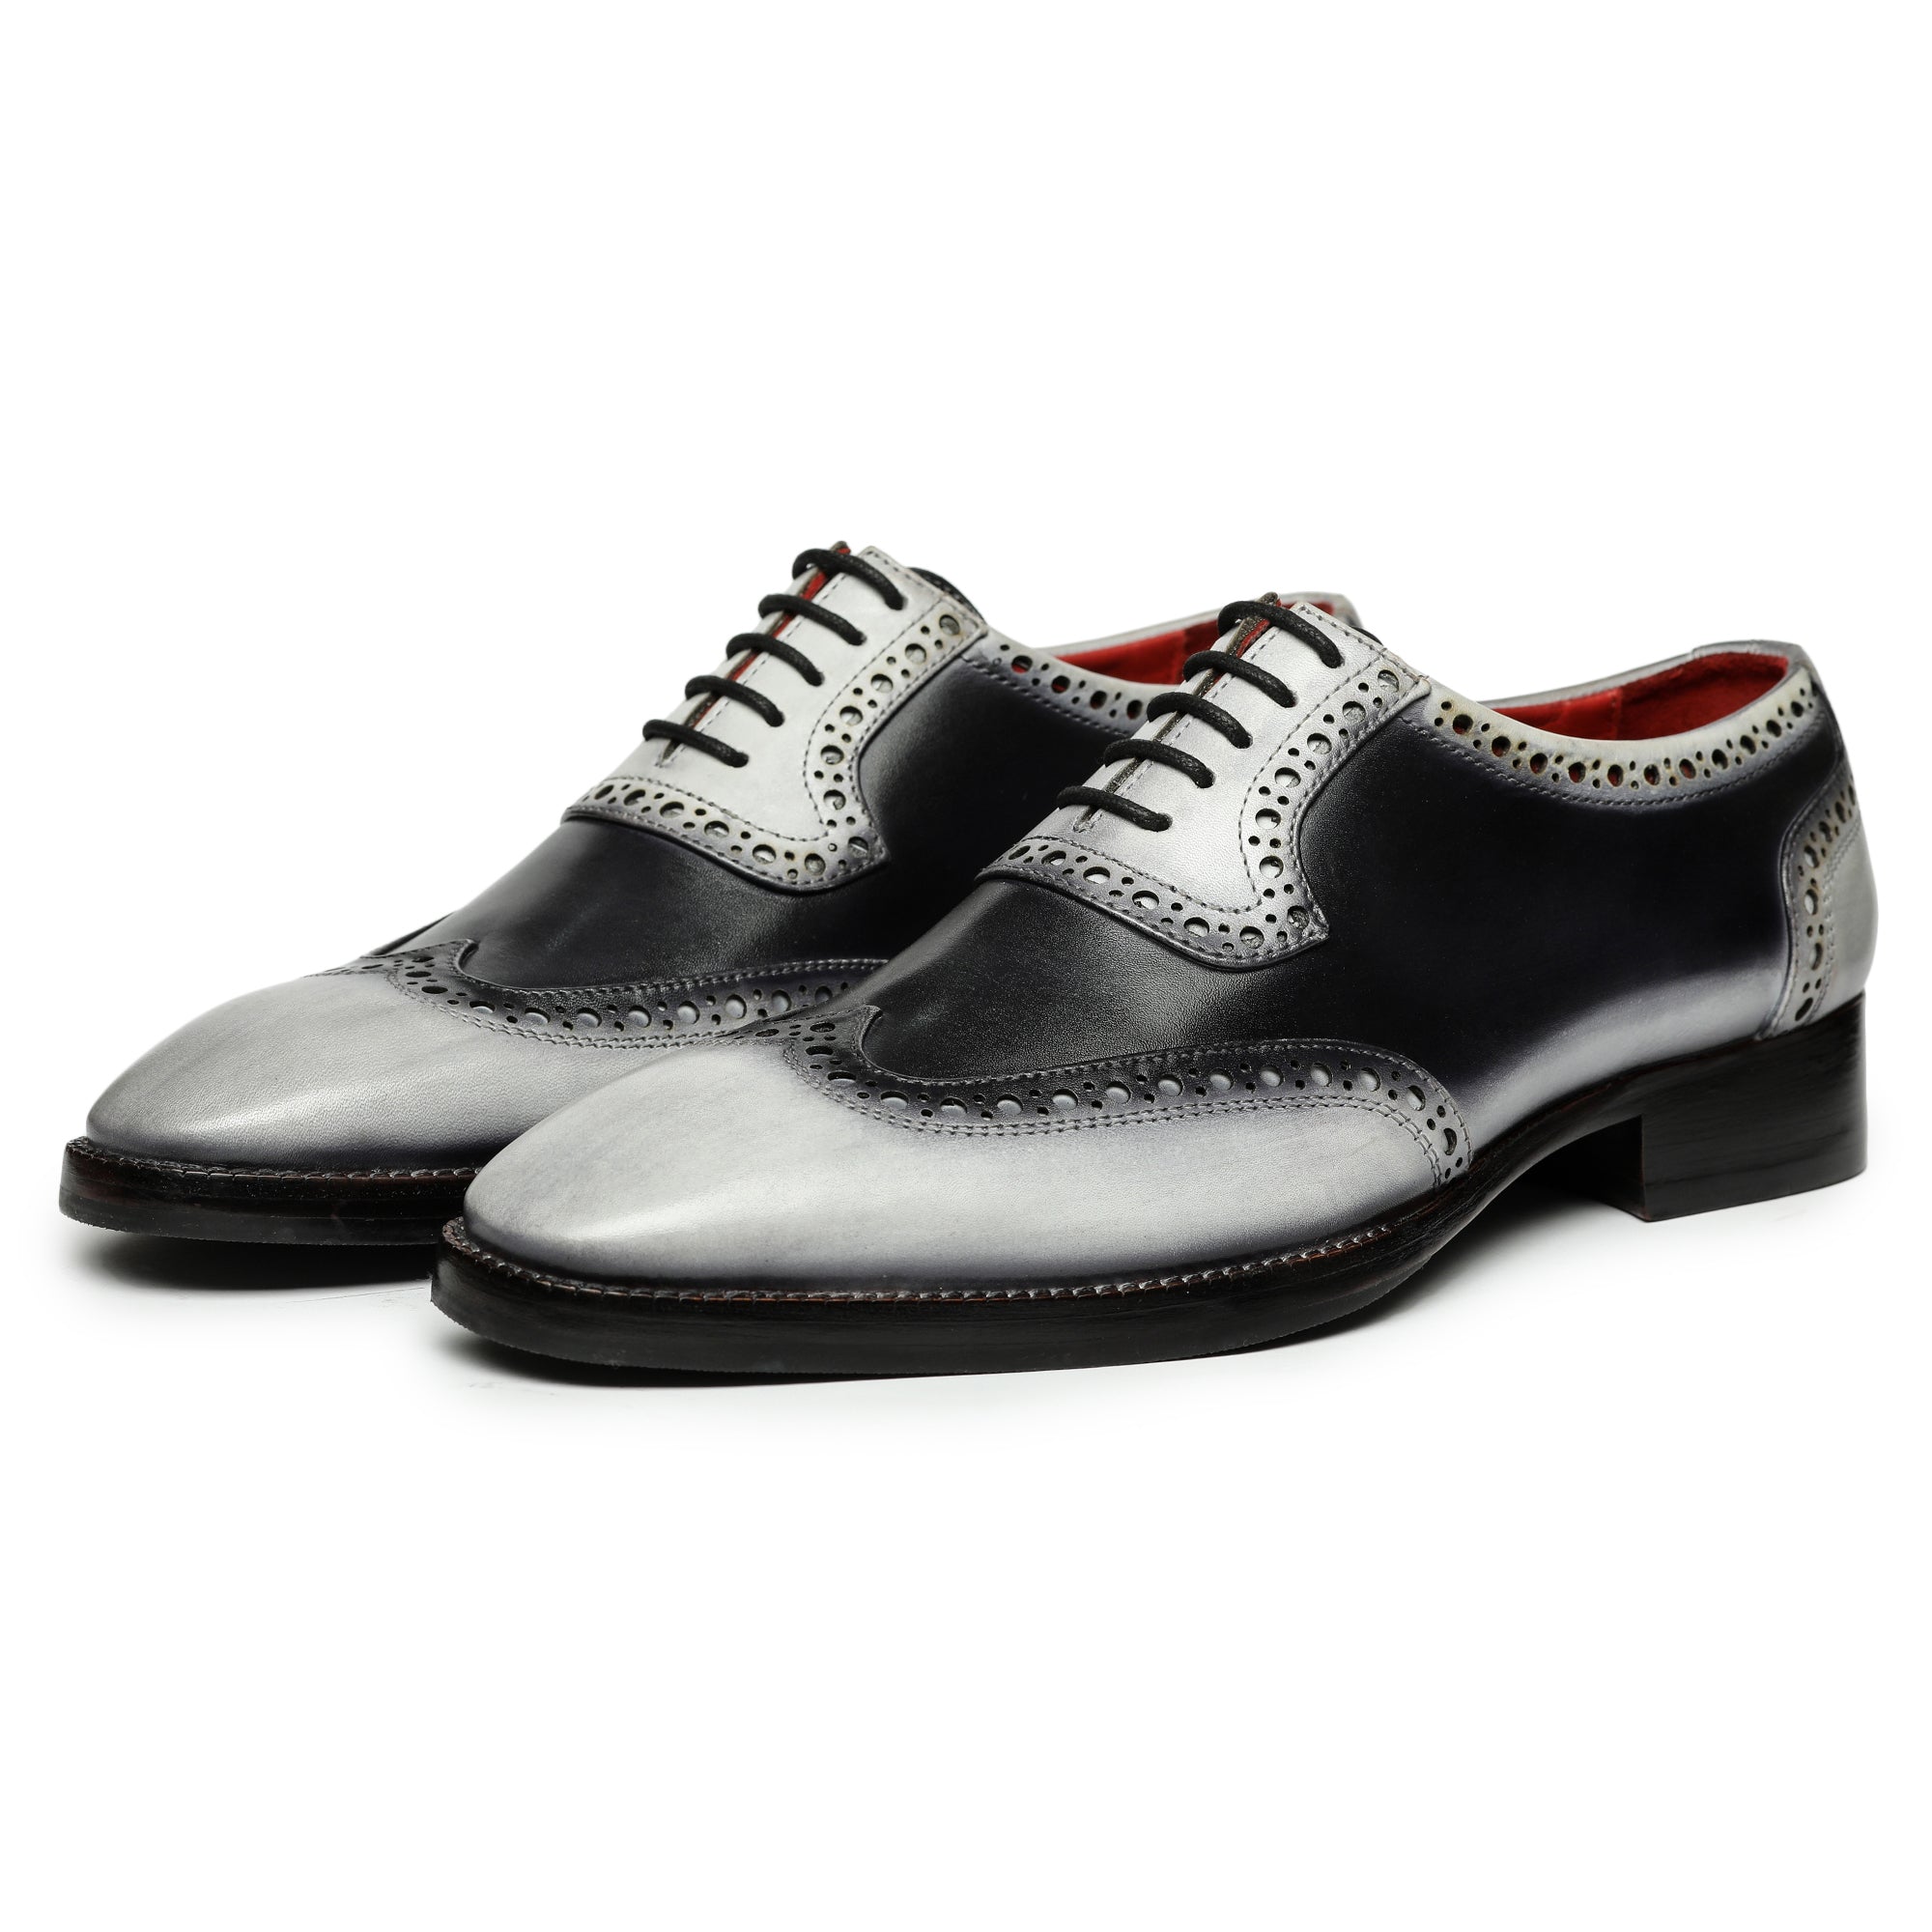 Wingtip Brogue Oxford- Grey & Black, Wingtip Shoes